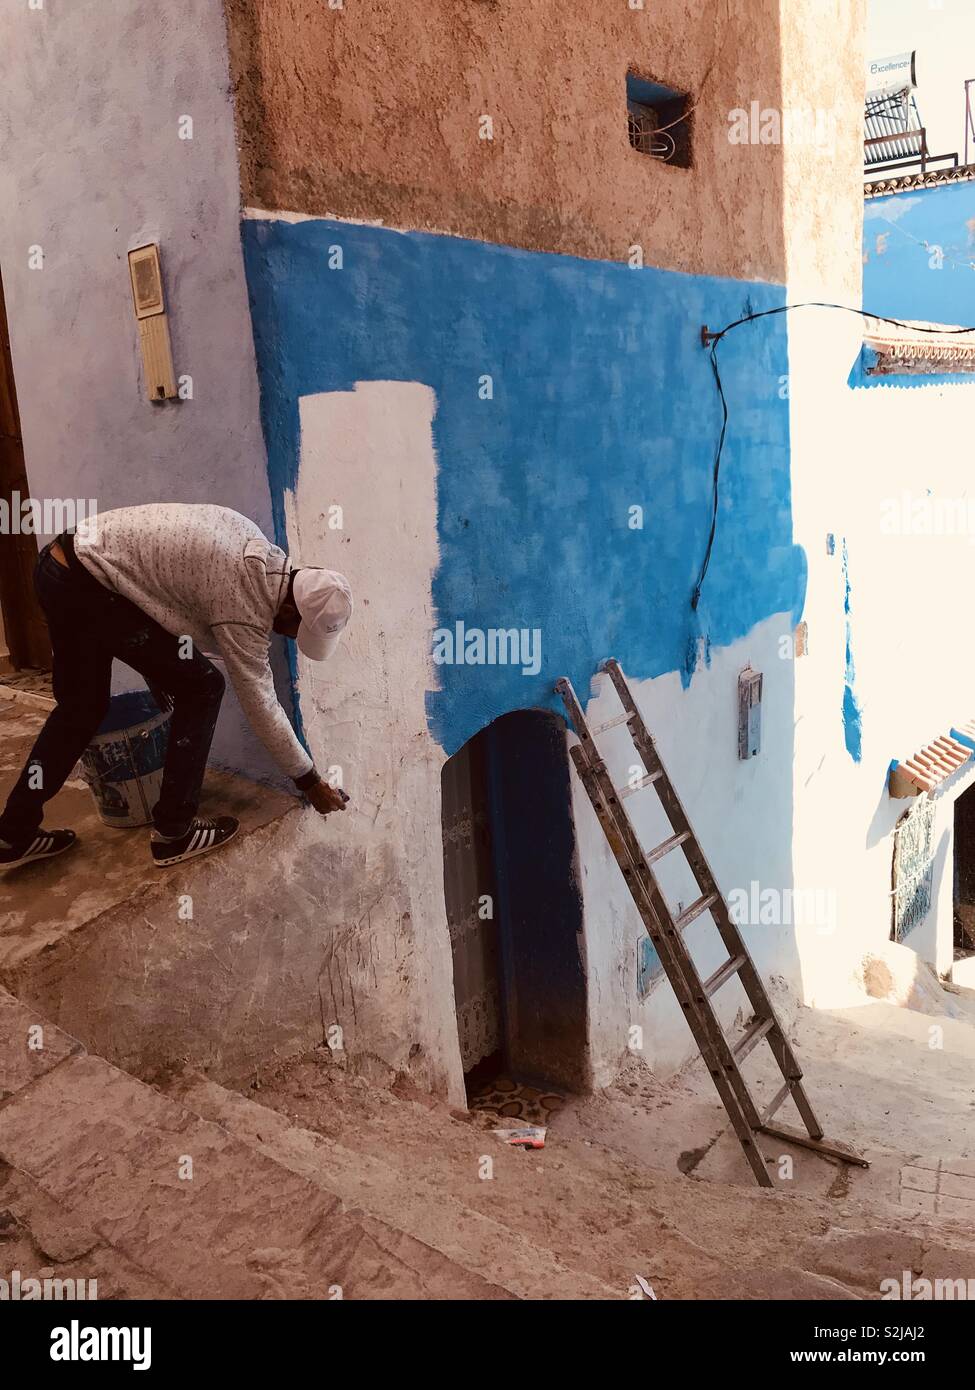 La Ville et la peinture bleu, au Maroc (Silhouette d'un peintre) Lieu : Chefchaouen, Maroc | Photographie Artiste : Monroe, Hiver 2018 Banque D'Images